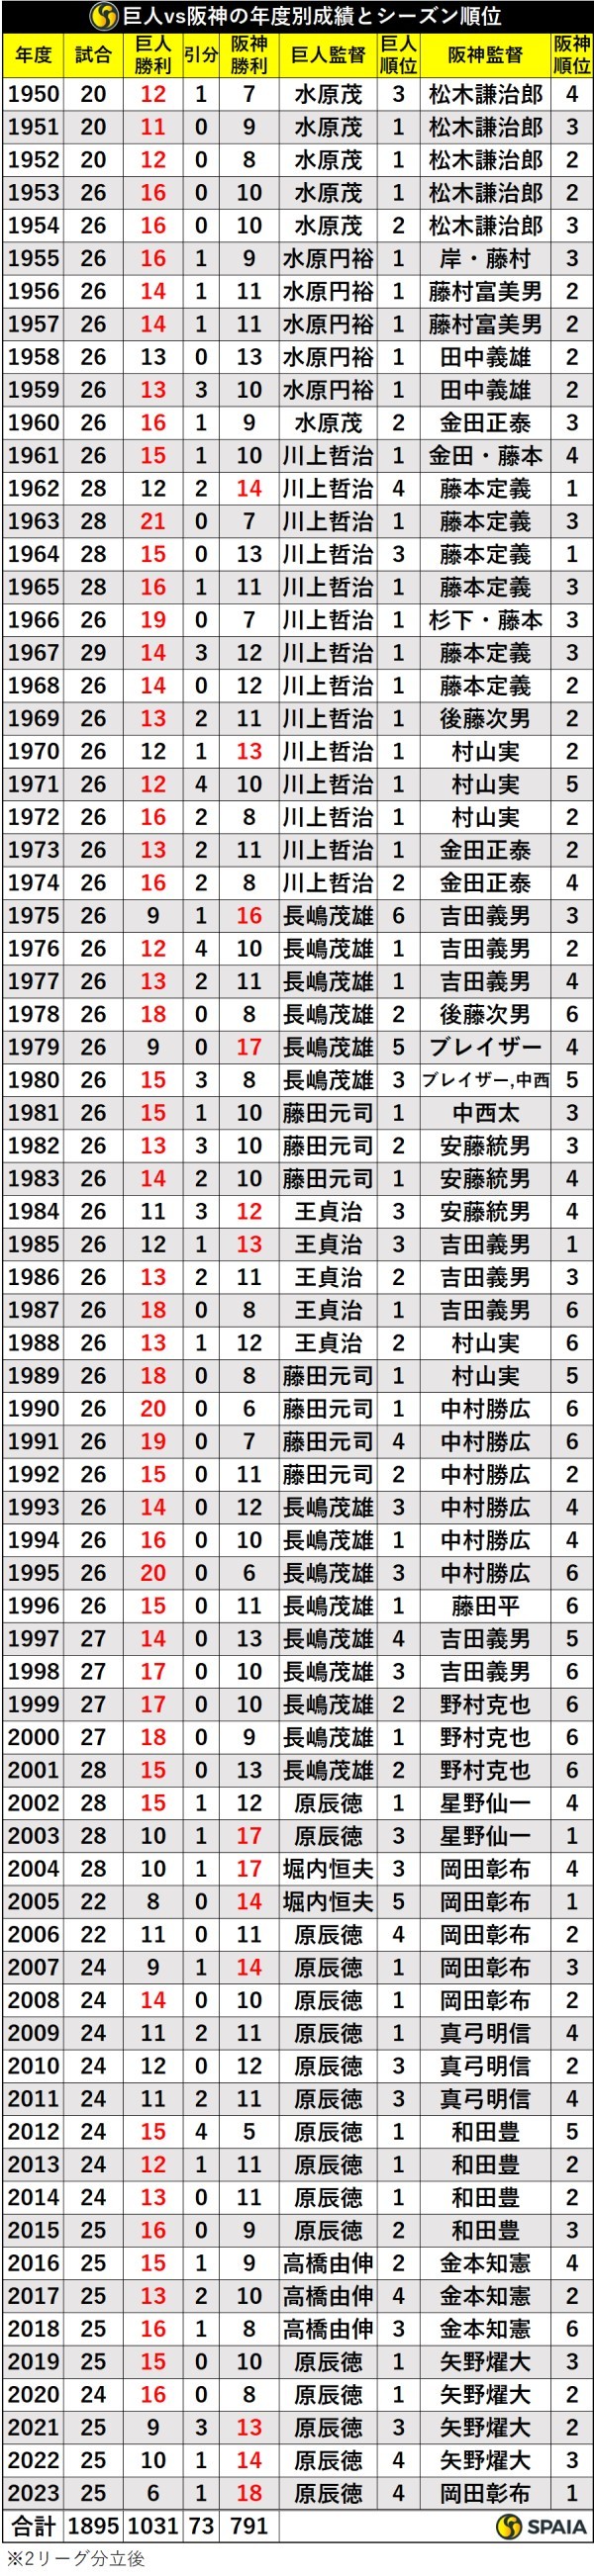 巨人対阪神の年度別成績とシーズン順位